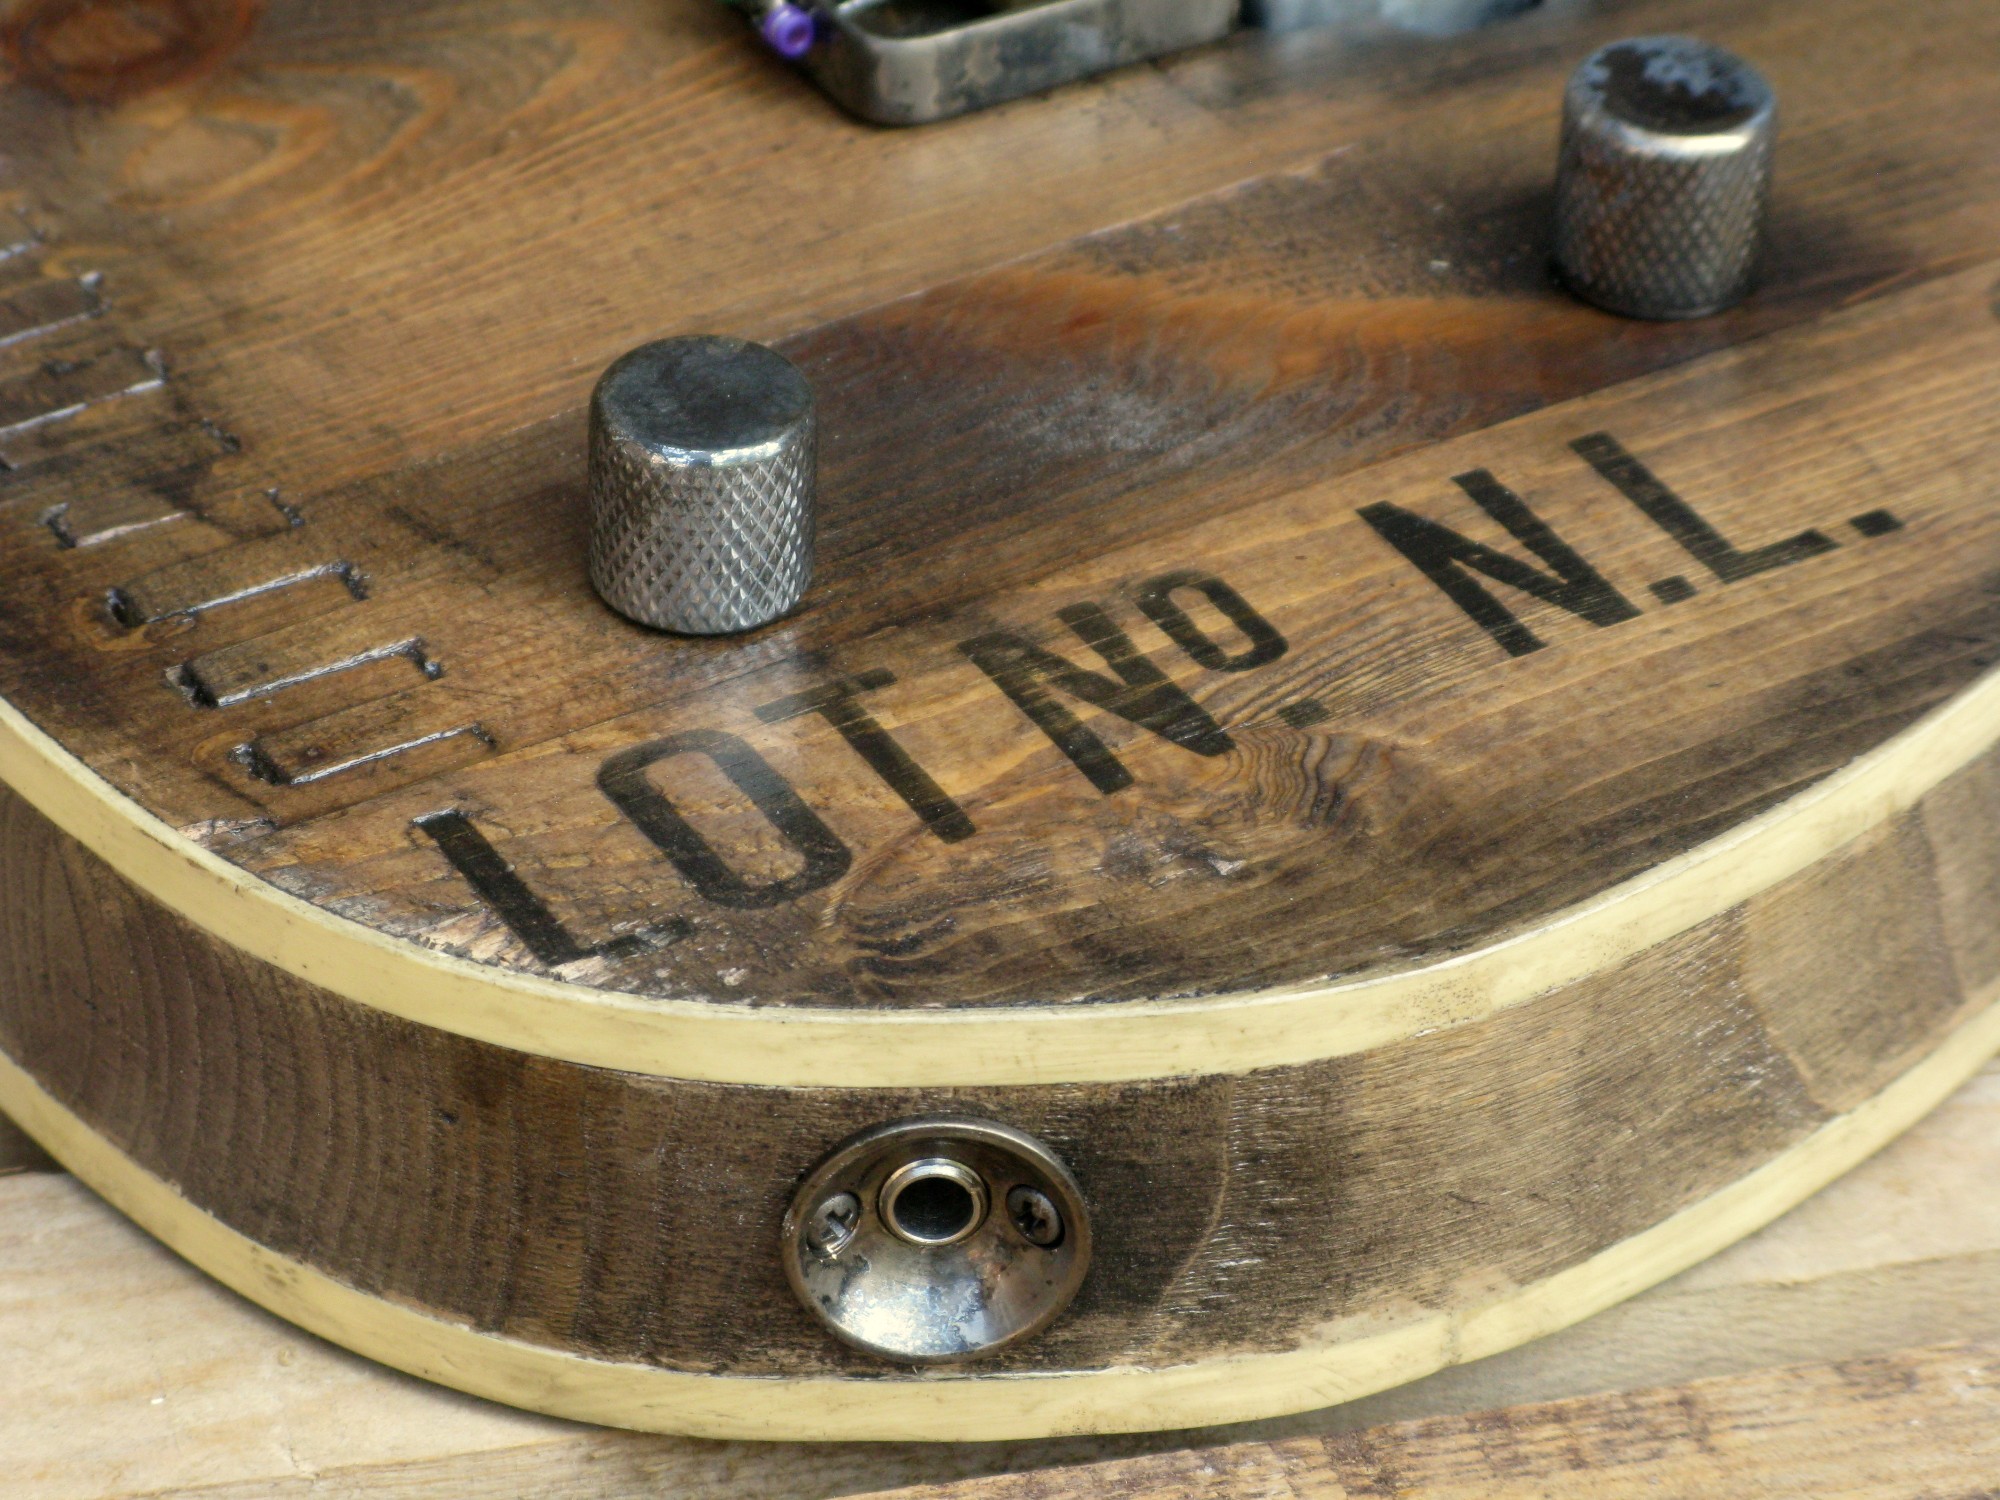 Dettaglio del binding di una chitarra elettrica baritono modello Telecaster con top ricavato da una vecchia cassetta di polvere da sparo